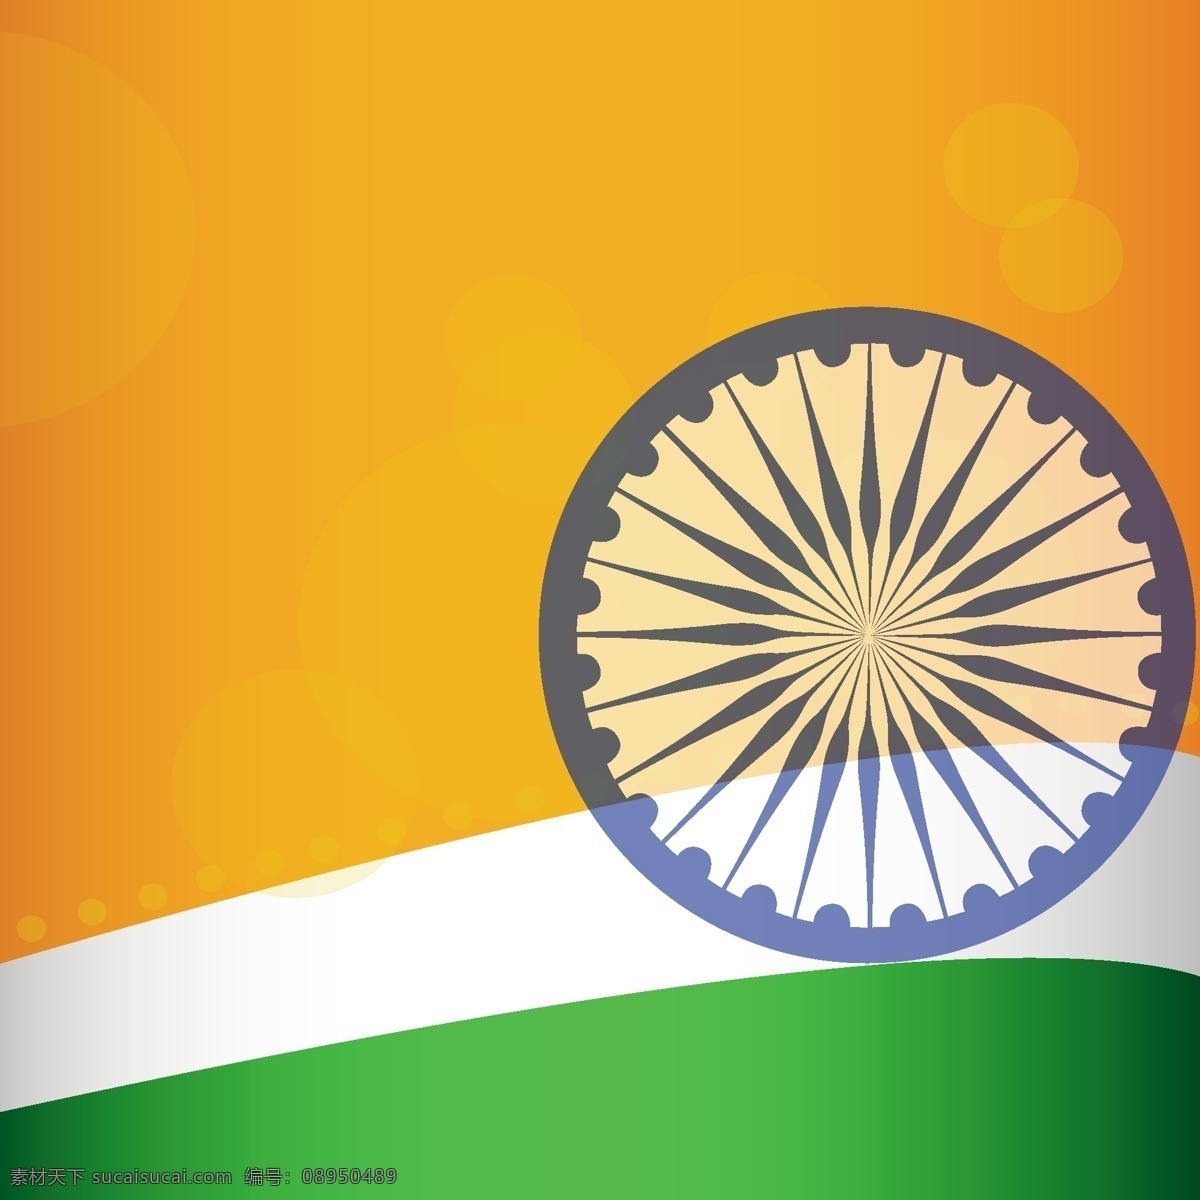 印度 背景 色彩 摘要 国旗 节日 丰富多彩 和平 国家 自由 爱国 一月 独立 脉轮 民主 民族 共和国 宪法 橙色